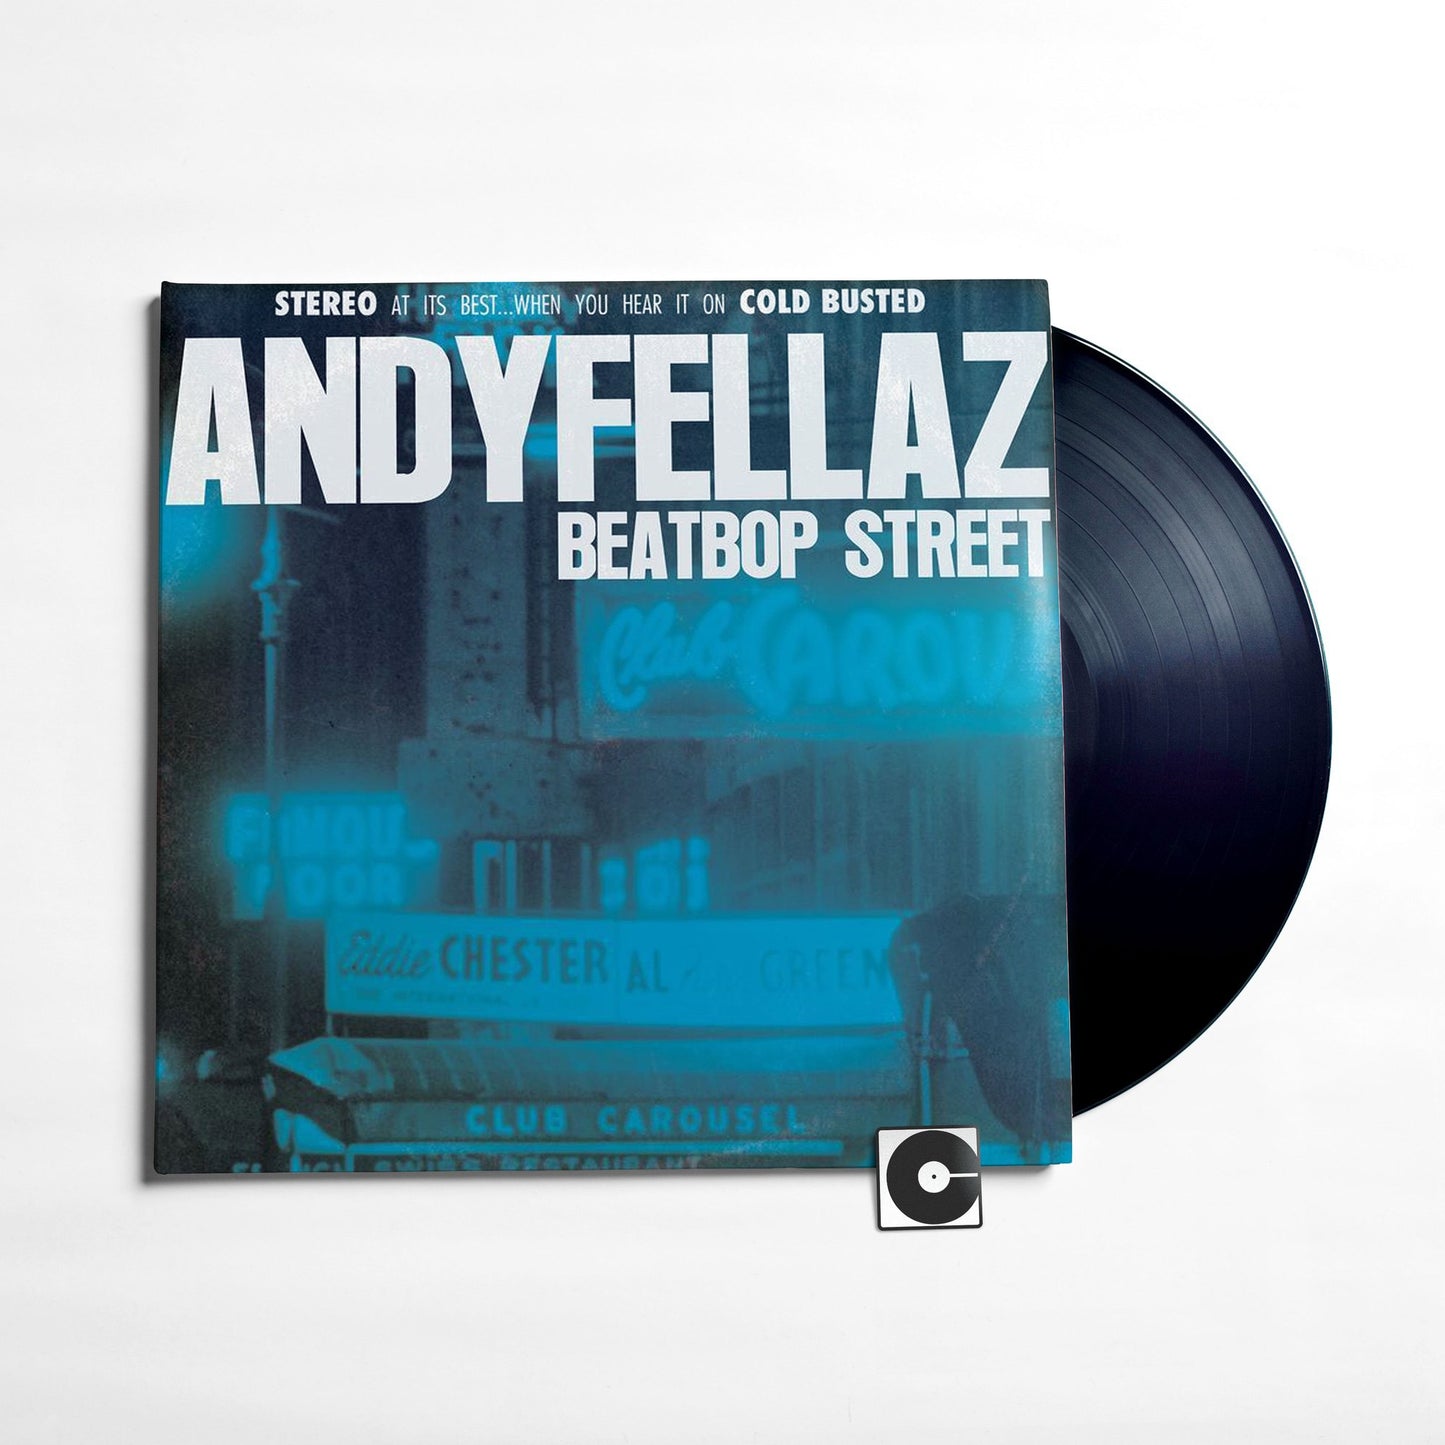 Andy Fellaz - "Beatbop Street"